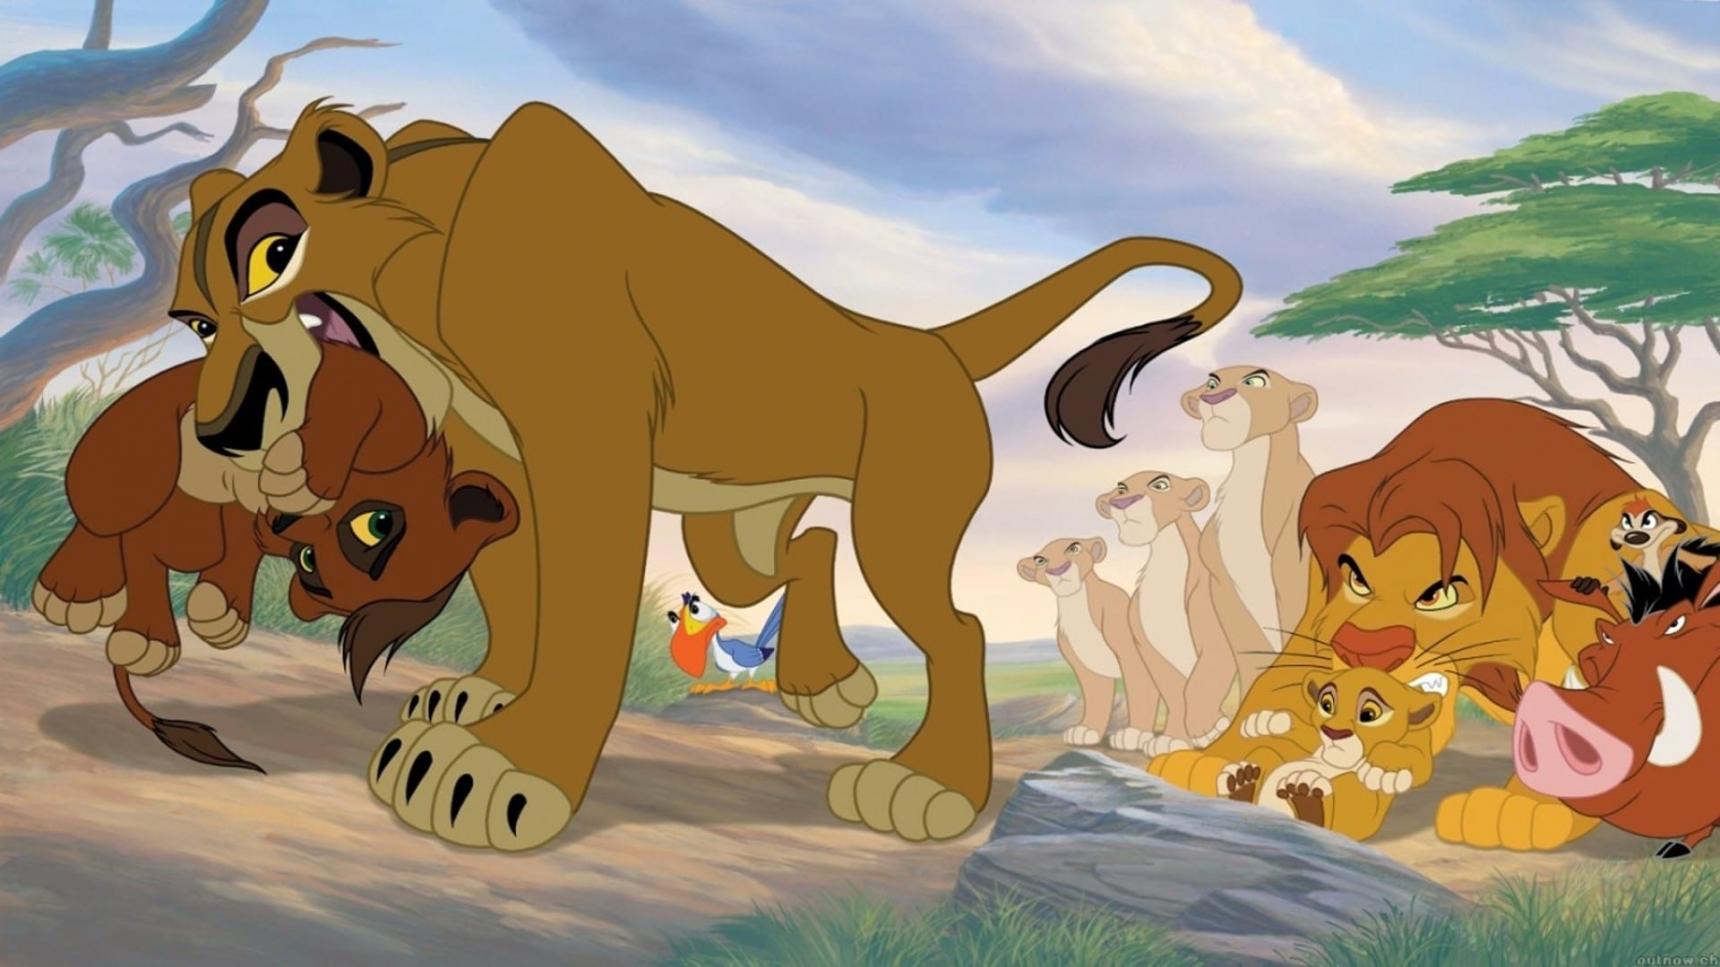 poster de El rey león 2: El tesoro de Simba